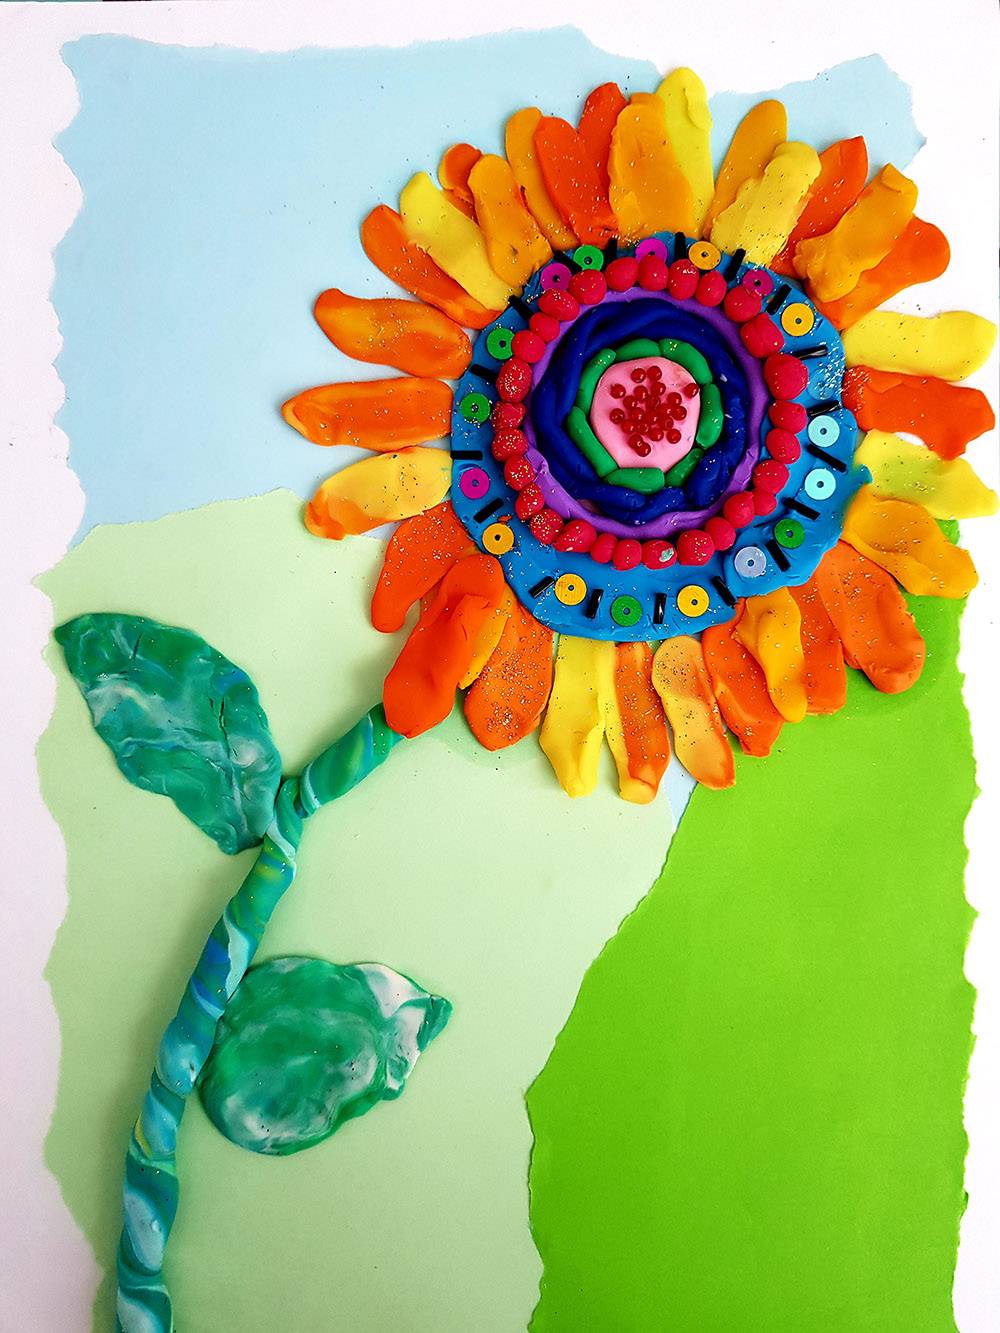 Подсолнух по уроку пластилиновой живописи в онлайн-лагере. Фон сделан в технике рваной аппликации, цветок украшен бисером и пайетками, в пластилин вкатаны мелкие блестки. Детали делают работу интереснее и фактурнее